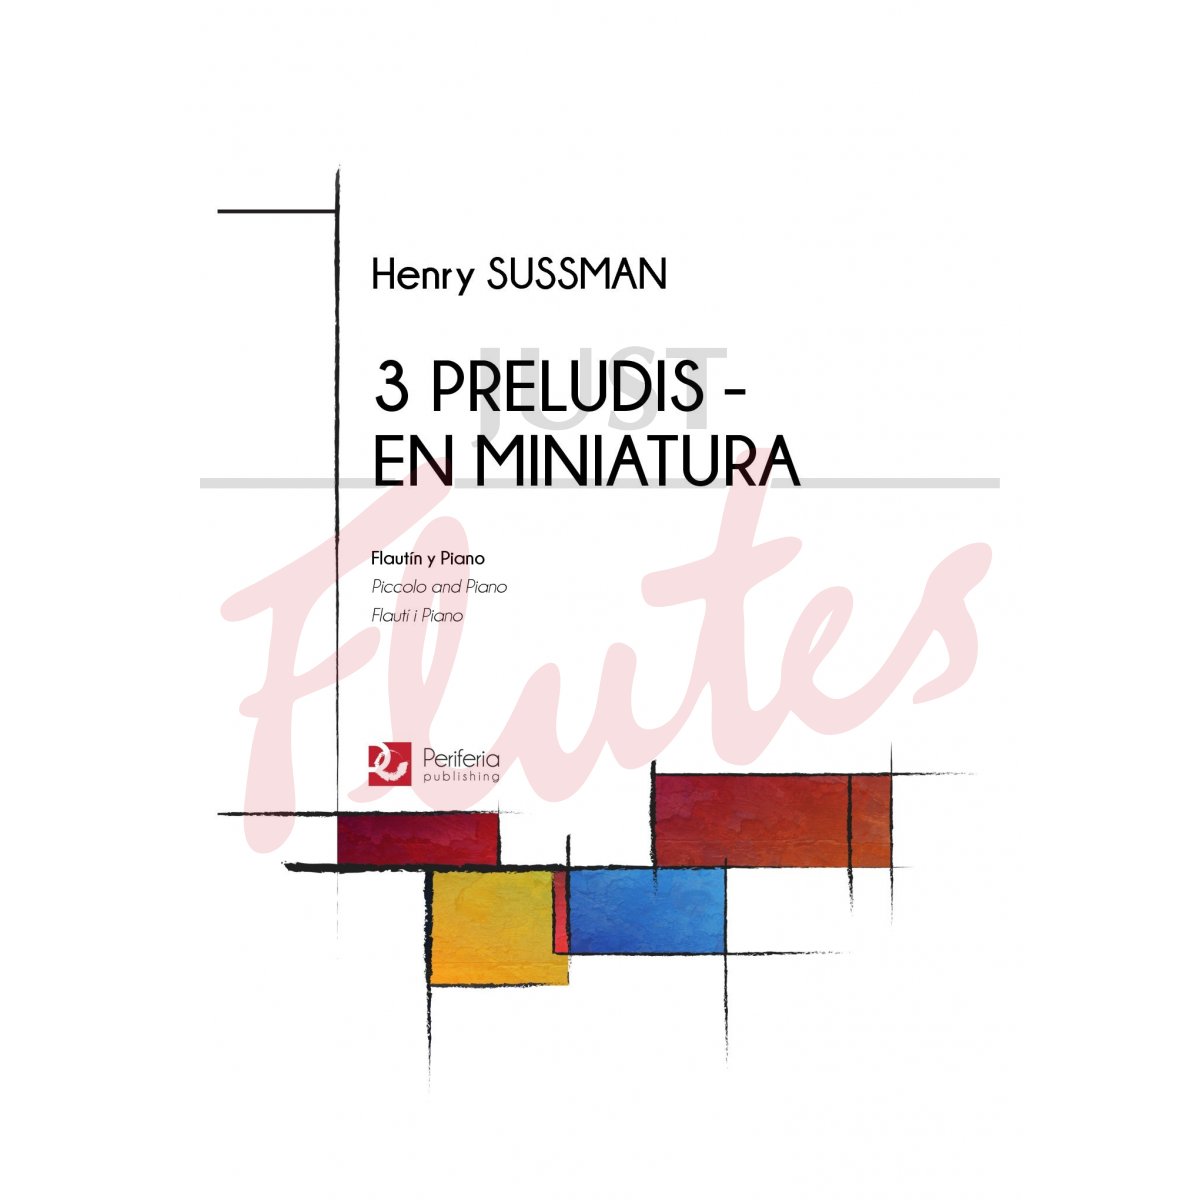 3 Preludis - En Miniatura for Piccolo and Piano